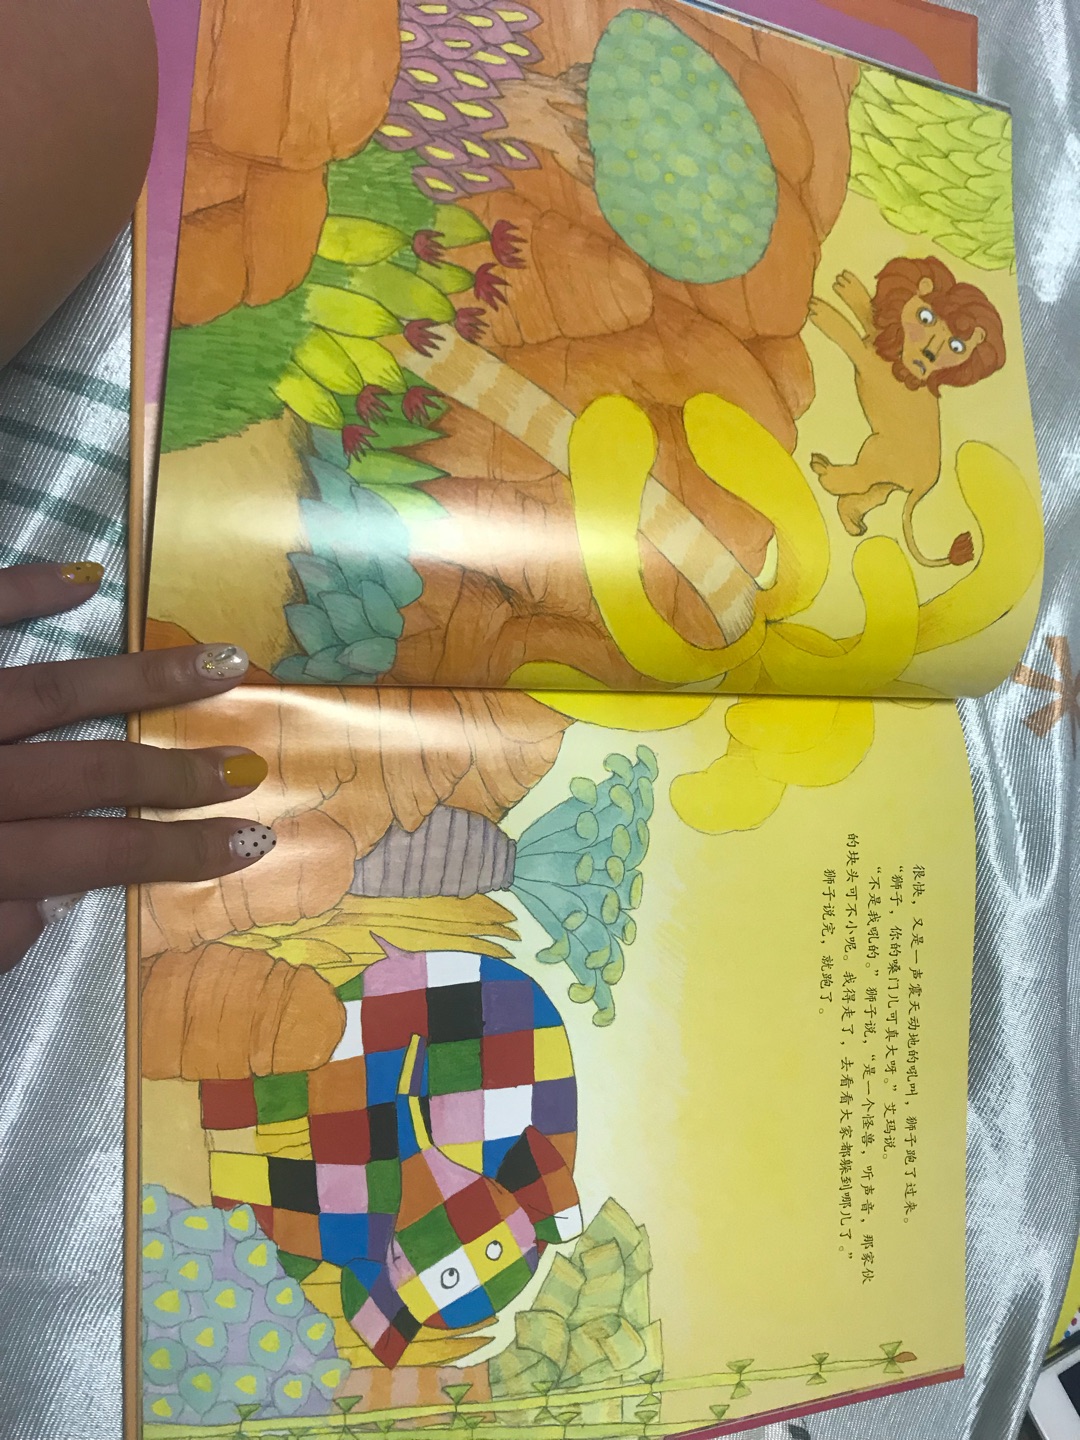 书质量蛮好、精装的、四本内容稍低幼、目前读了三本、4岁半的孩子很喜欢、浅显易懂的道理，里面每本还有张艾玛的填色纸、根据自己的喜欢、涂了四张不一样的彩色格子大象、这点棒棒哒